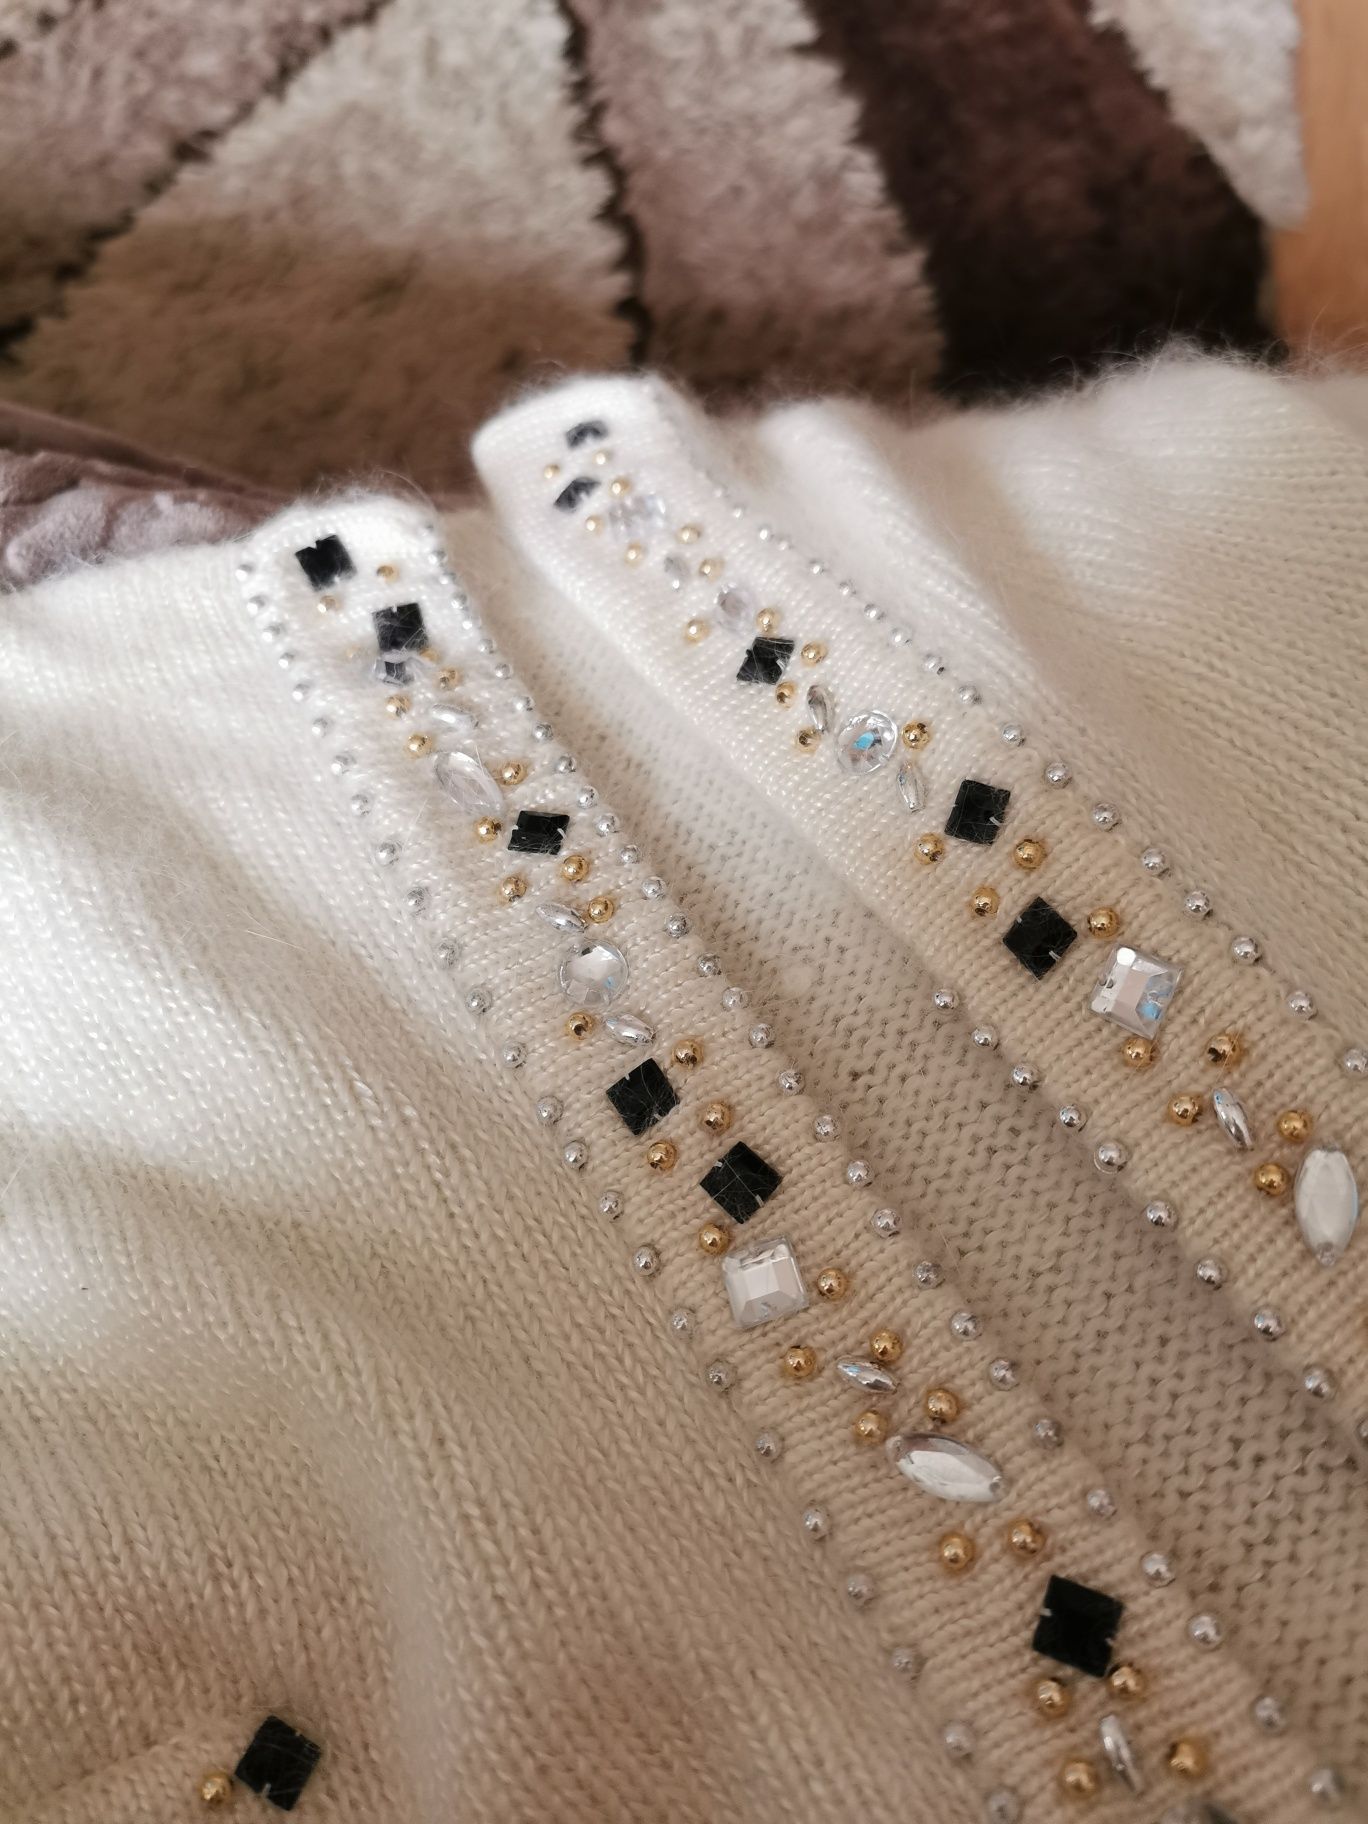 Sweter kardigan wełniany wełna angora kremowy beżowy kryształki L 40